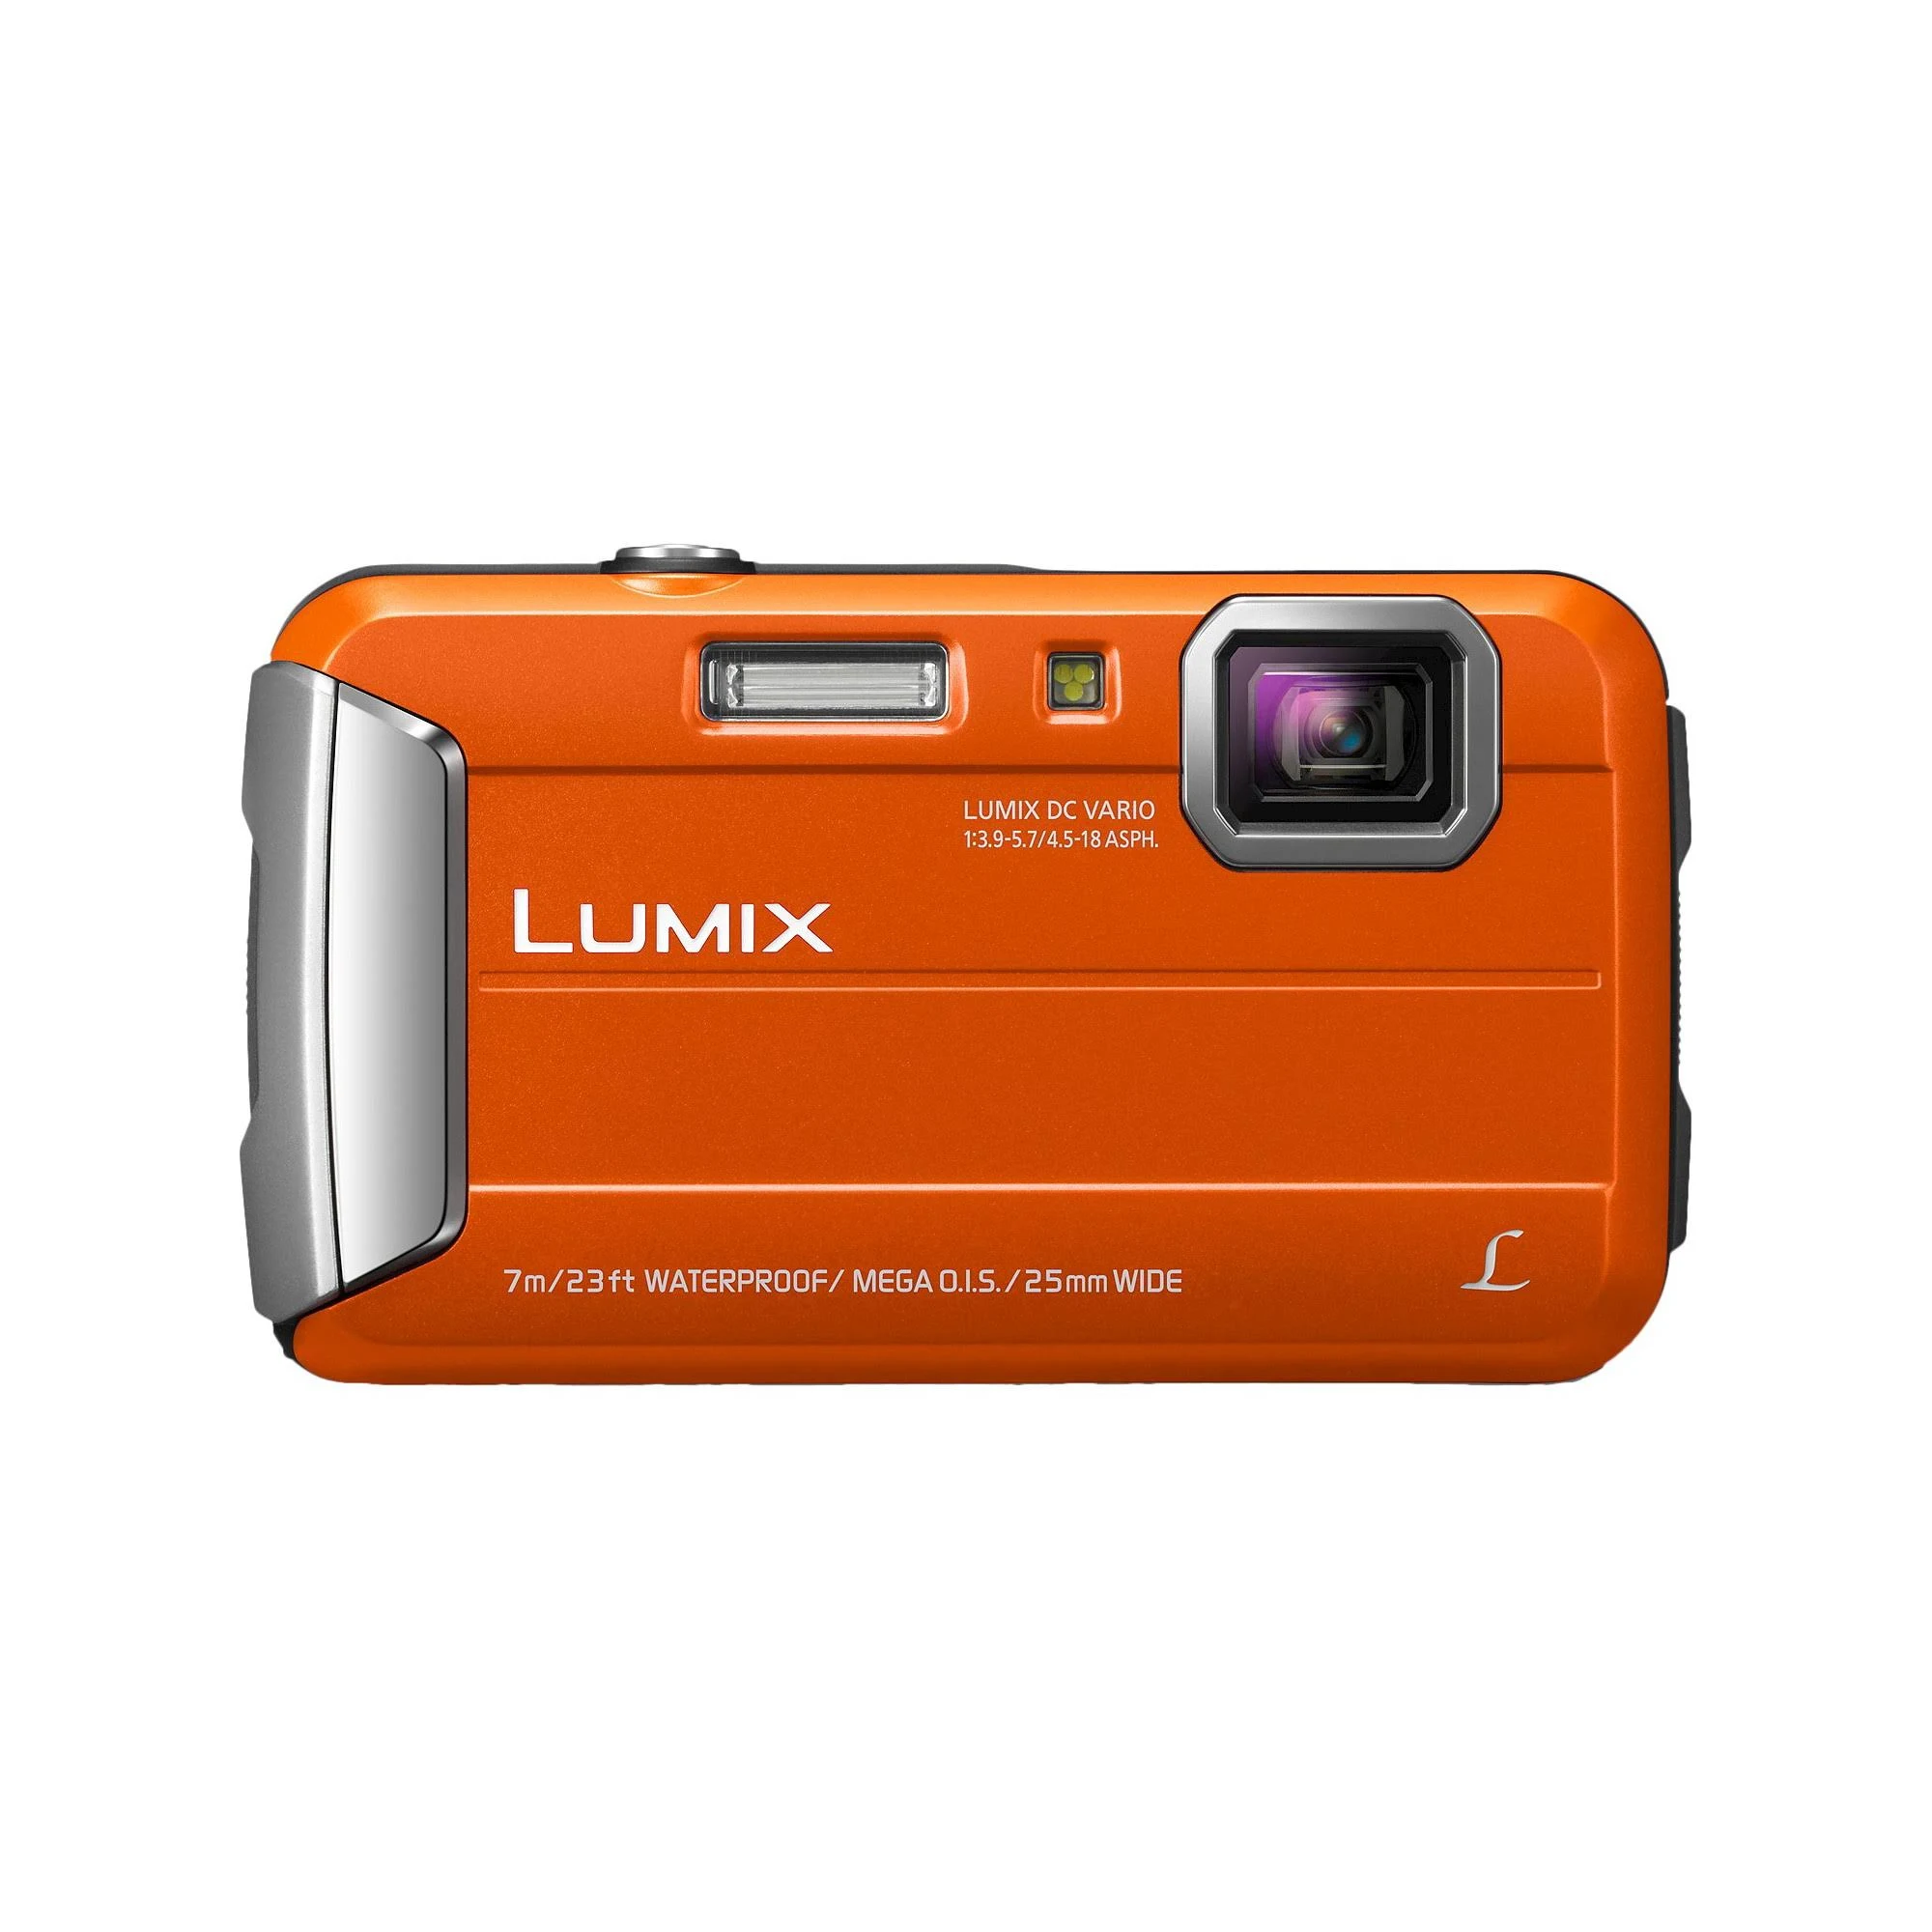 Panasonic Lumix TS25 Cámara digital impermeable de 16MP con zoom óptico 4x